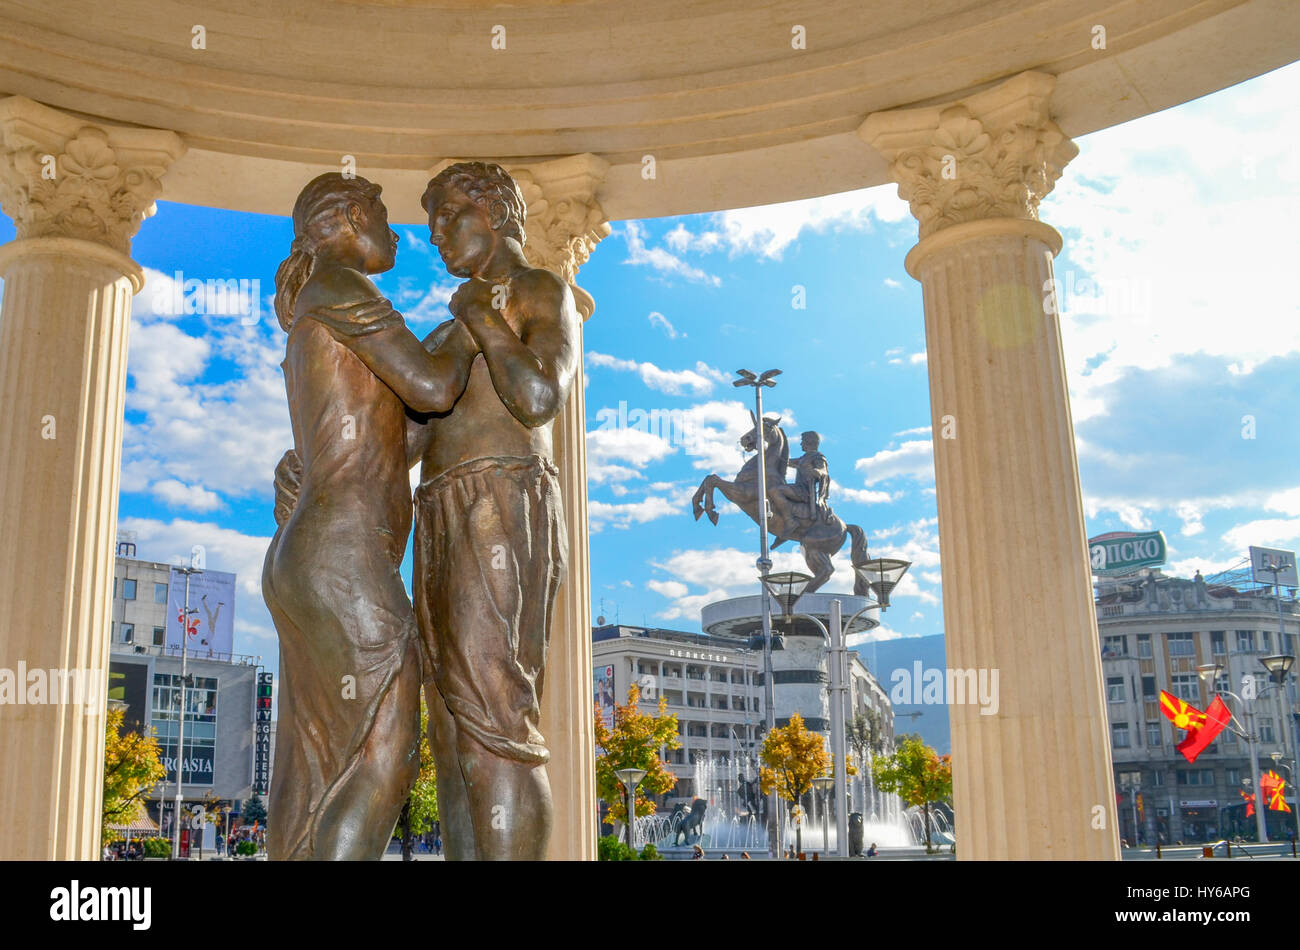 Love - Monument in Skopje, Macedonia Stock Photo